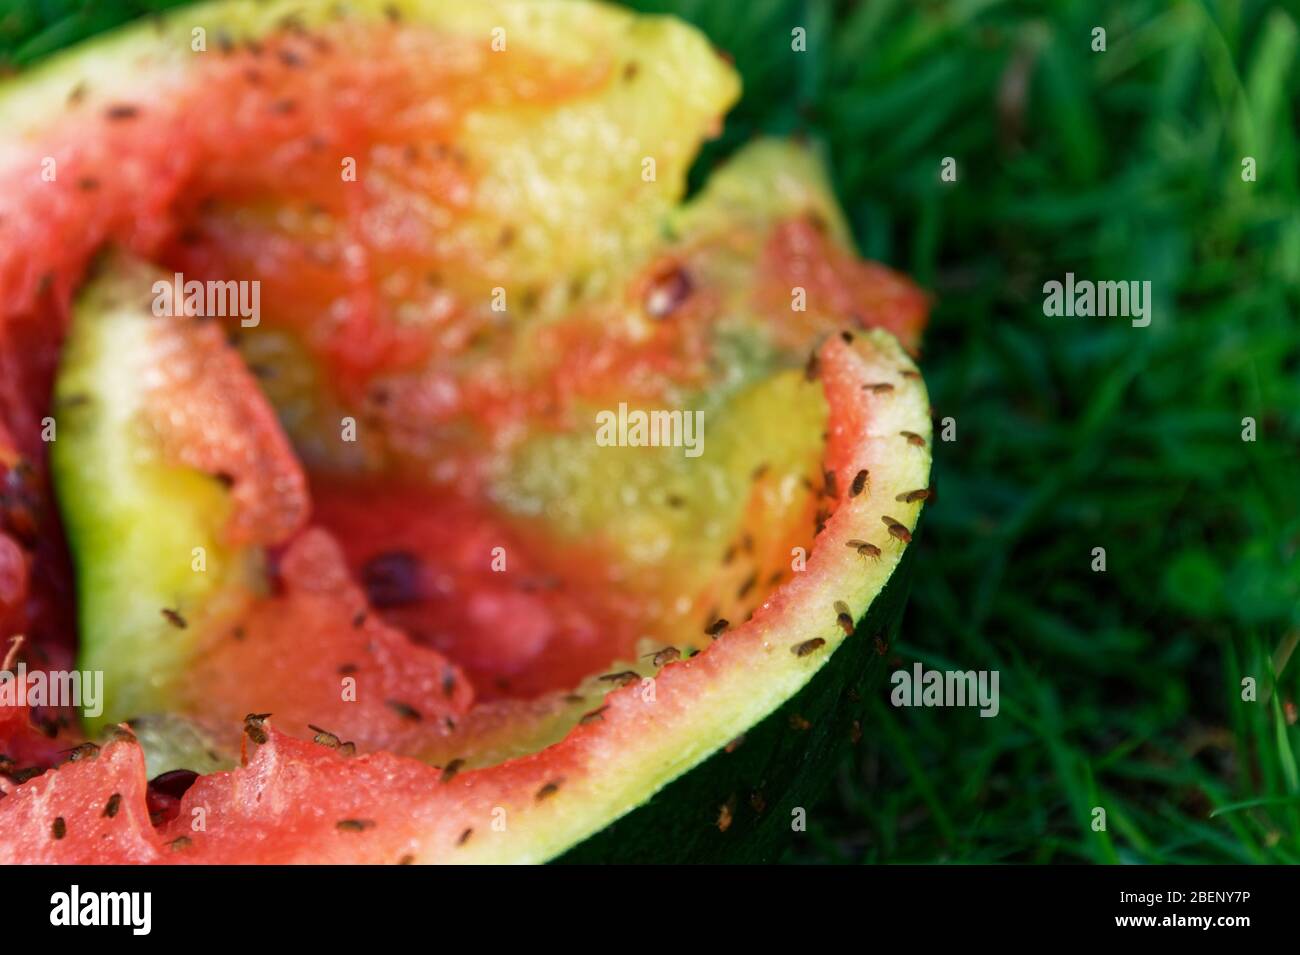 Fruchtfliegen werden von einem weggeworfenen Stück Wassermelone angezogen,  das auf das Gras geworfen wurde Stockfotografie - Alamy